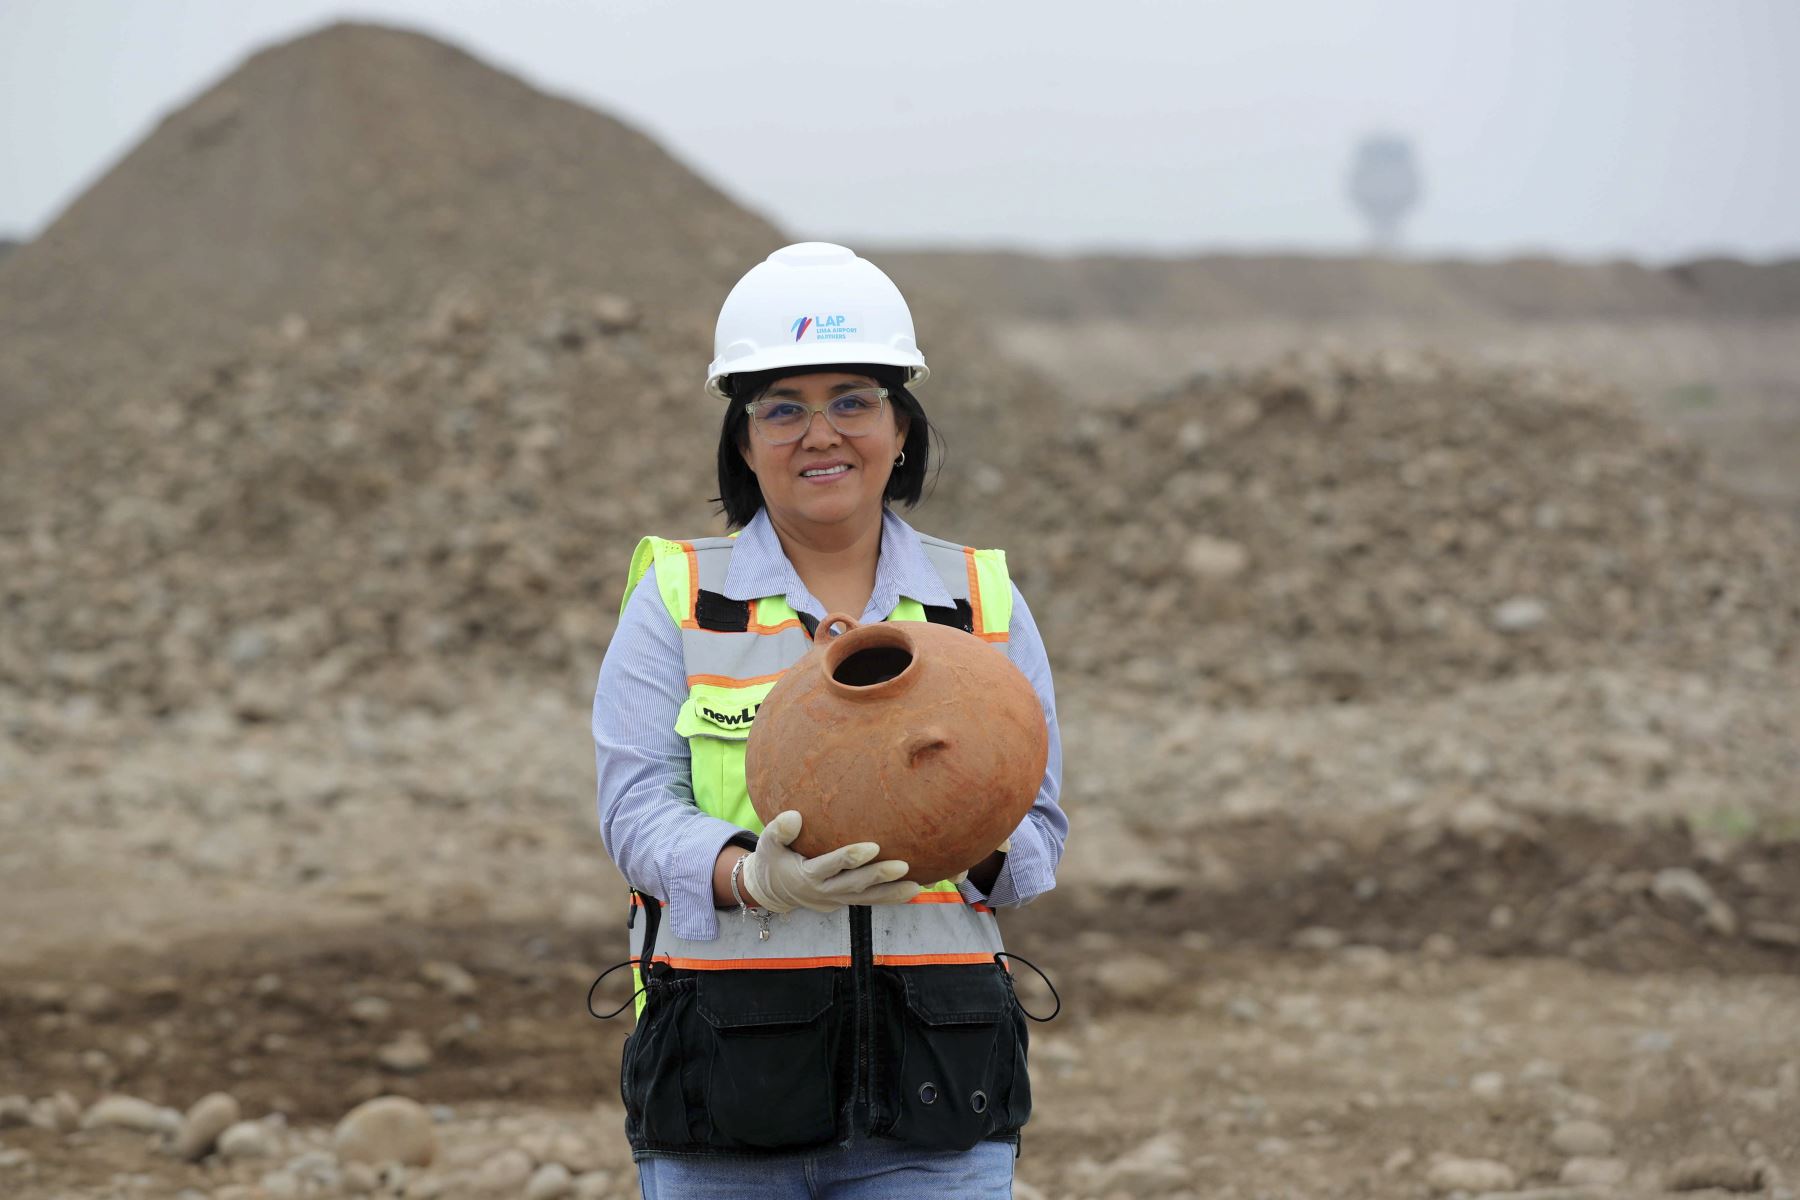 La arqueóloga Erika Cabello muestra una vasija hallada durante los trabajos de excavación de la construcción del nuevo aeropuerto de Lima.

Foto: EFE